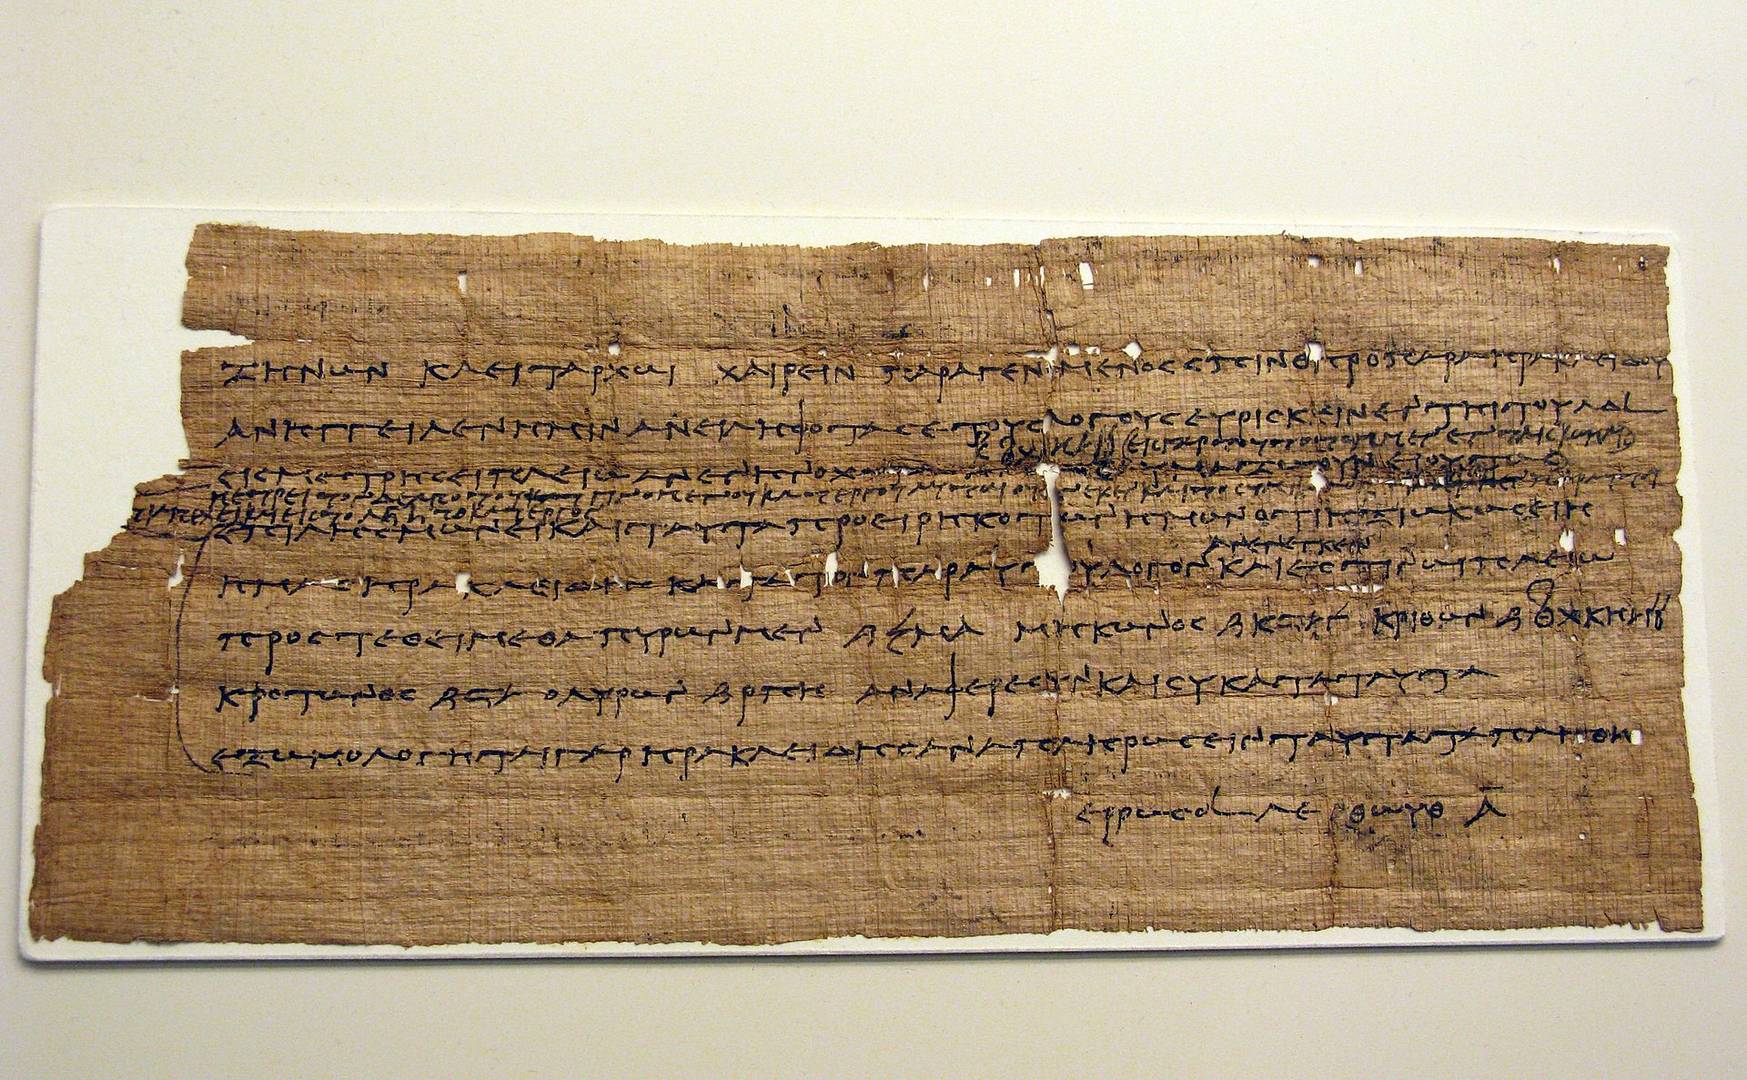 Папирус из архива Зенона — администратора в Фаюме. Примерно III век до н. э.